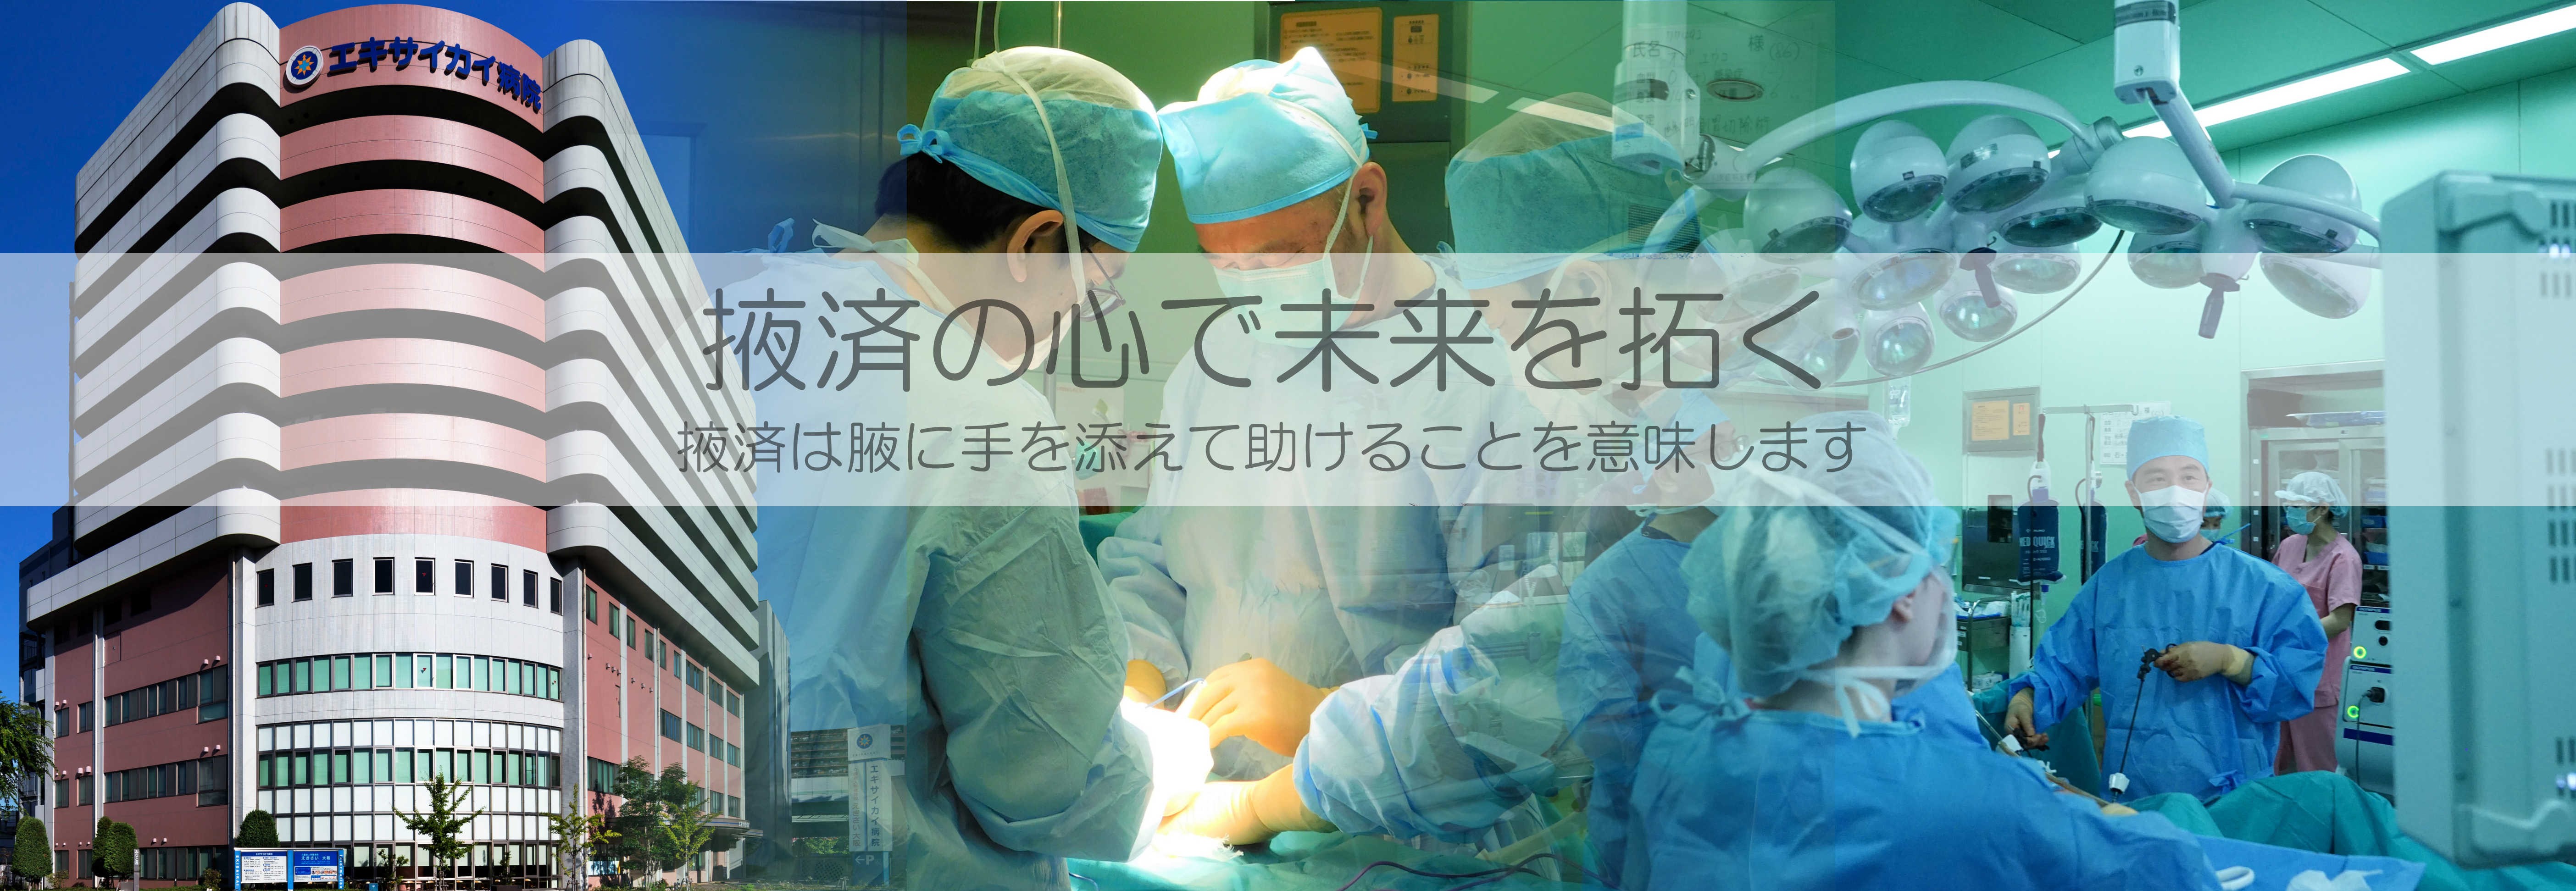 症 病院 感染 大阪 大阪市：新型コロナウイルス感染症のワクチン接種について （…>健康・医療>感染症・病気に関すること）